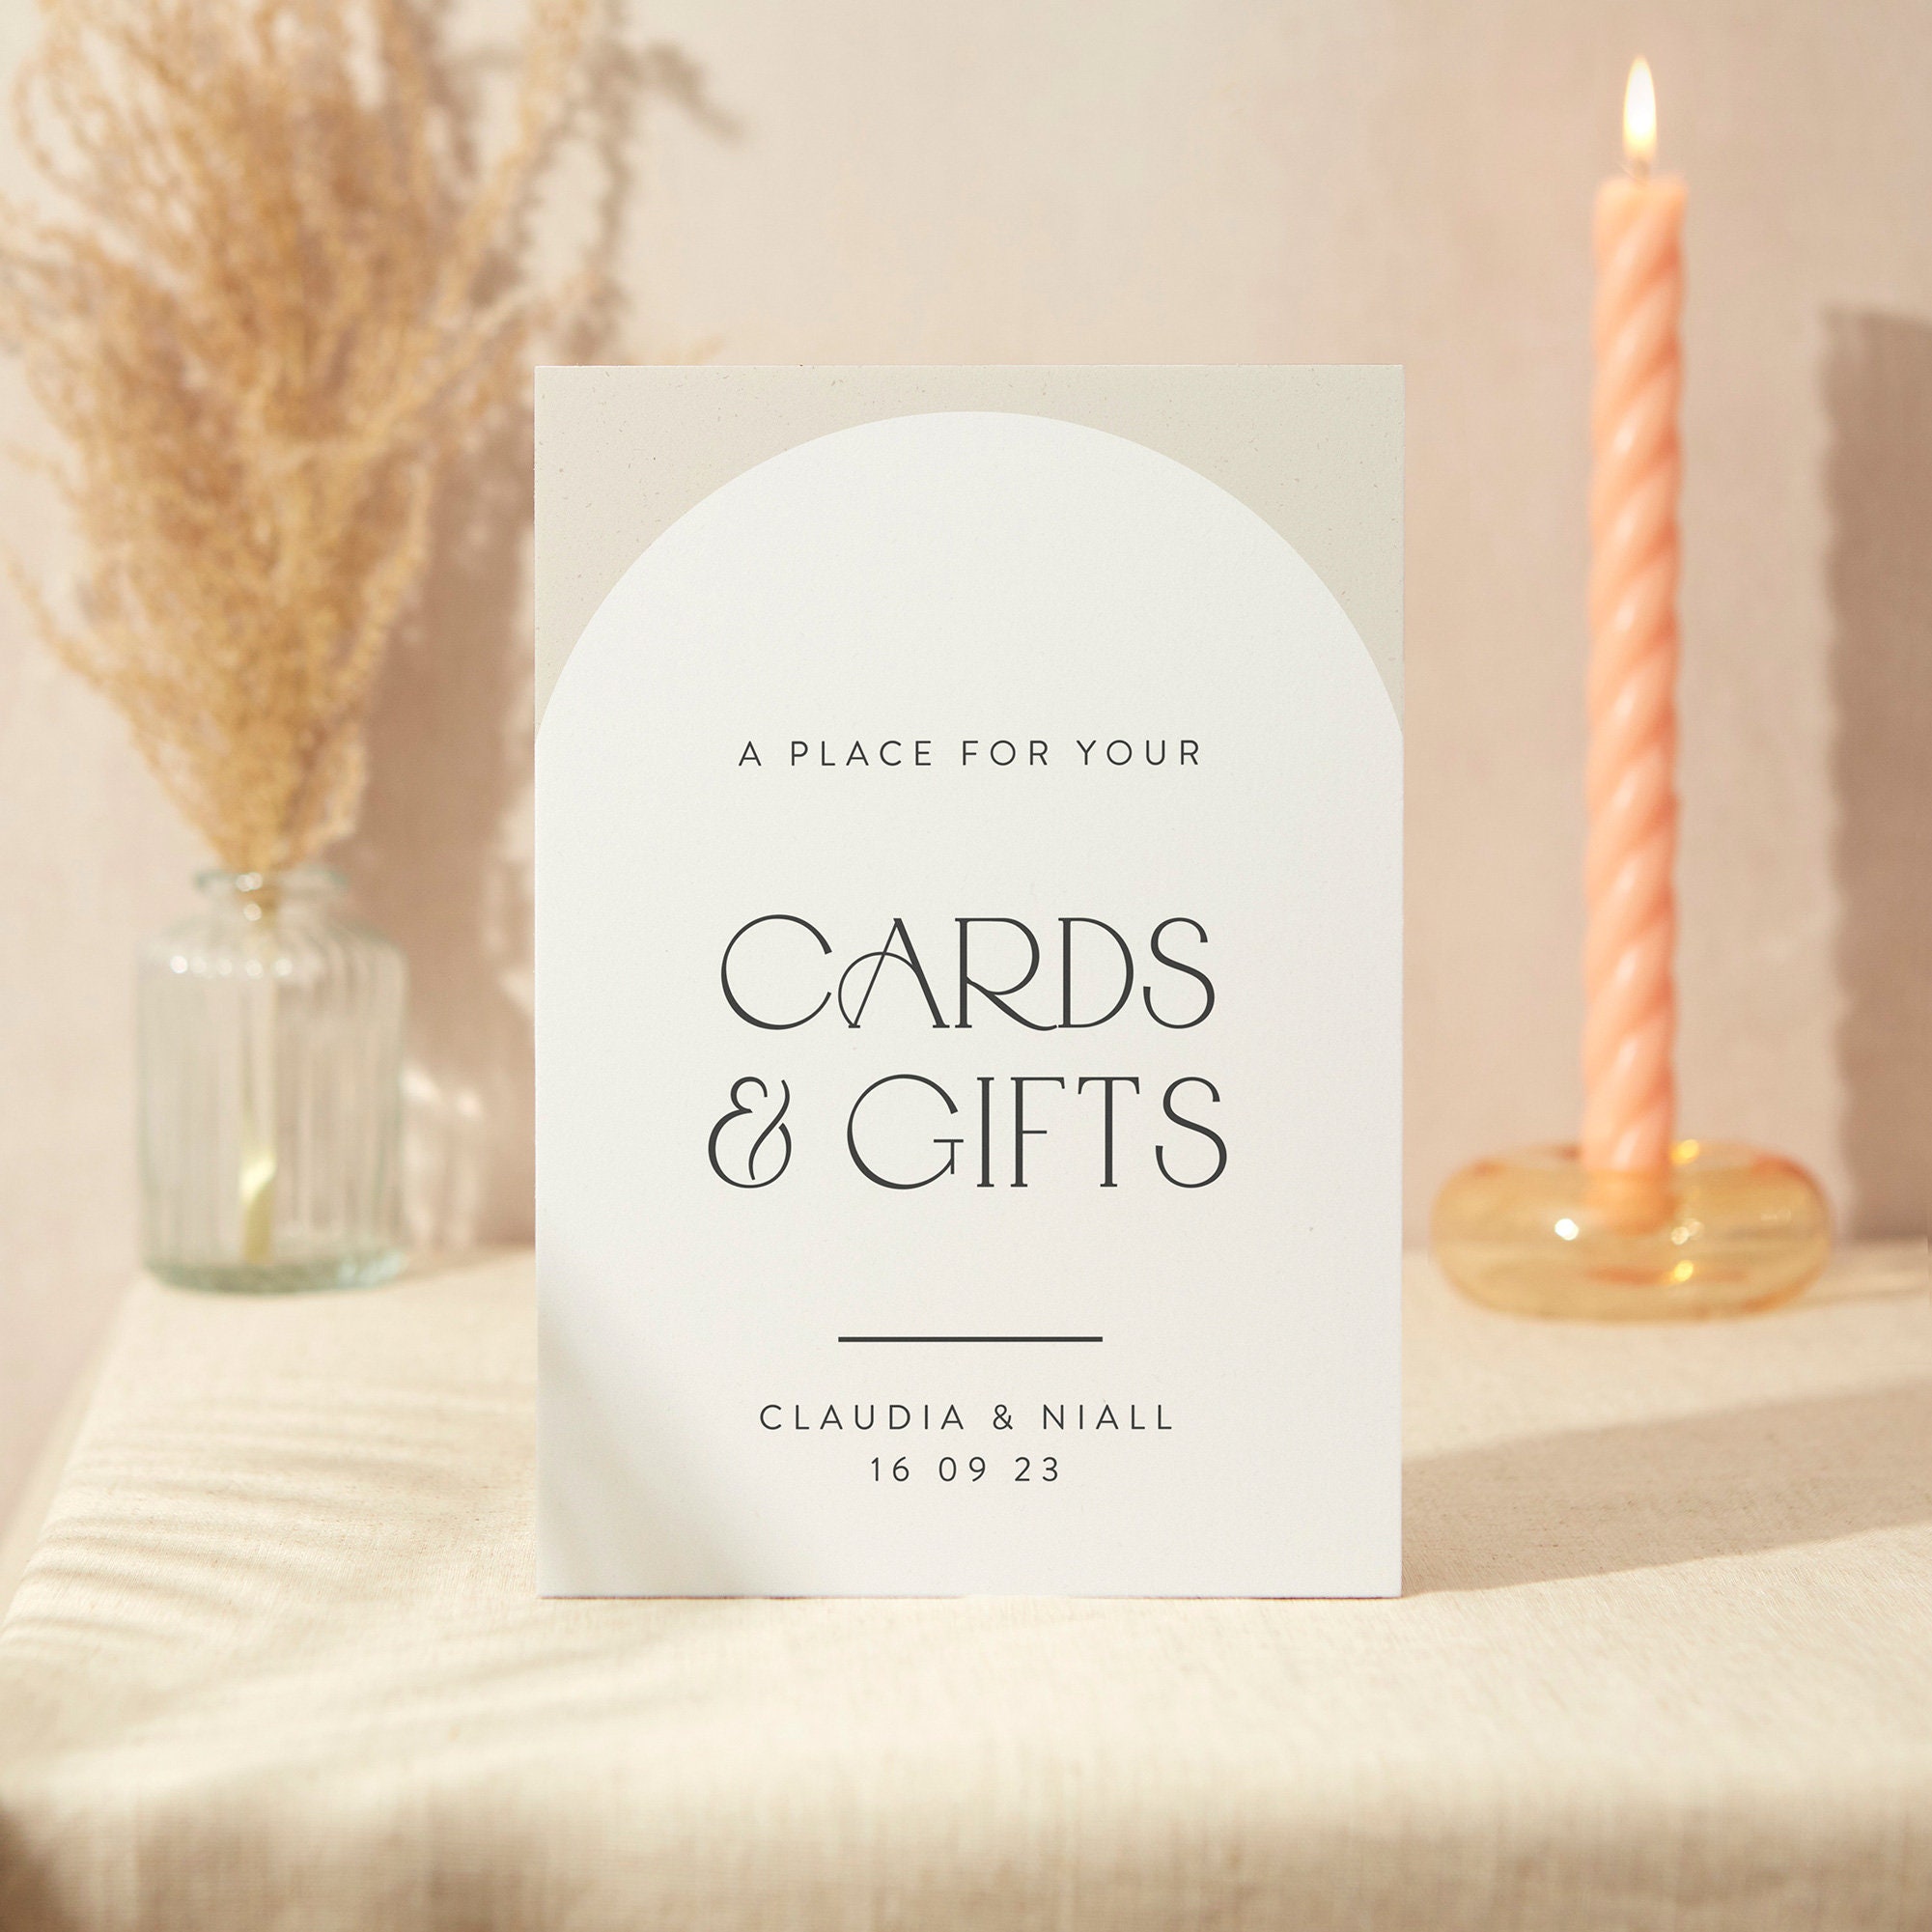 Cards & Gifts Sign | Wedding A4 Sturdy Foamex Minimalist Arch